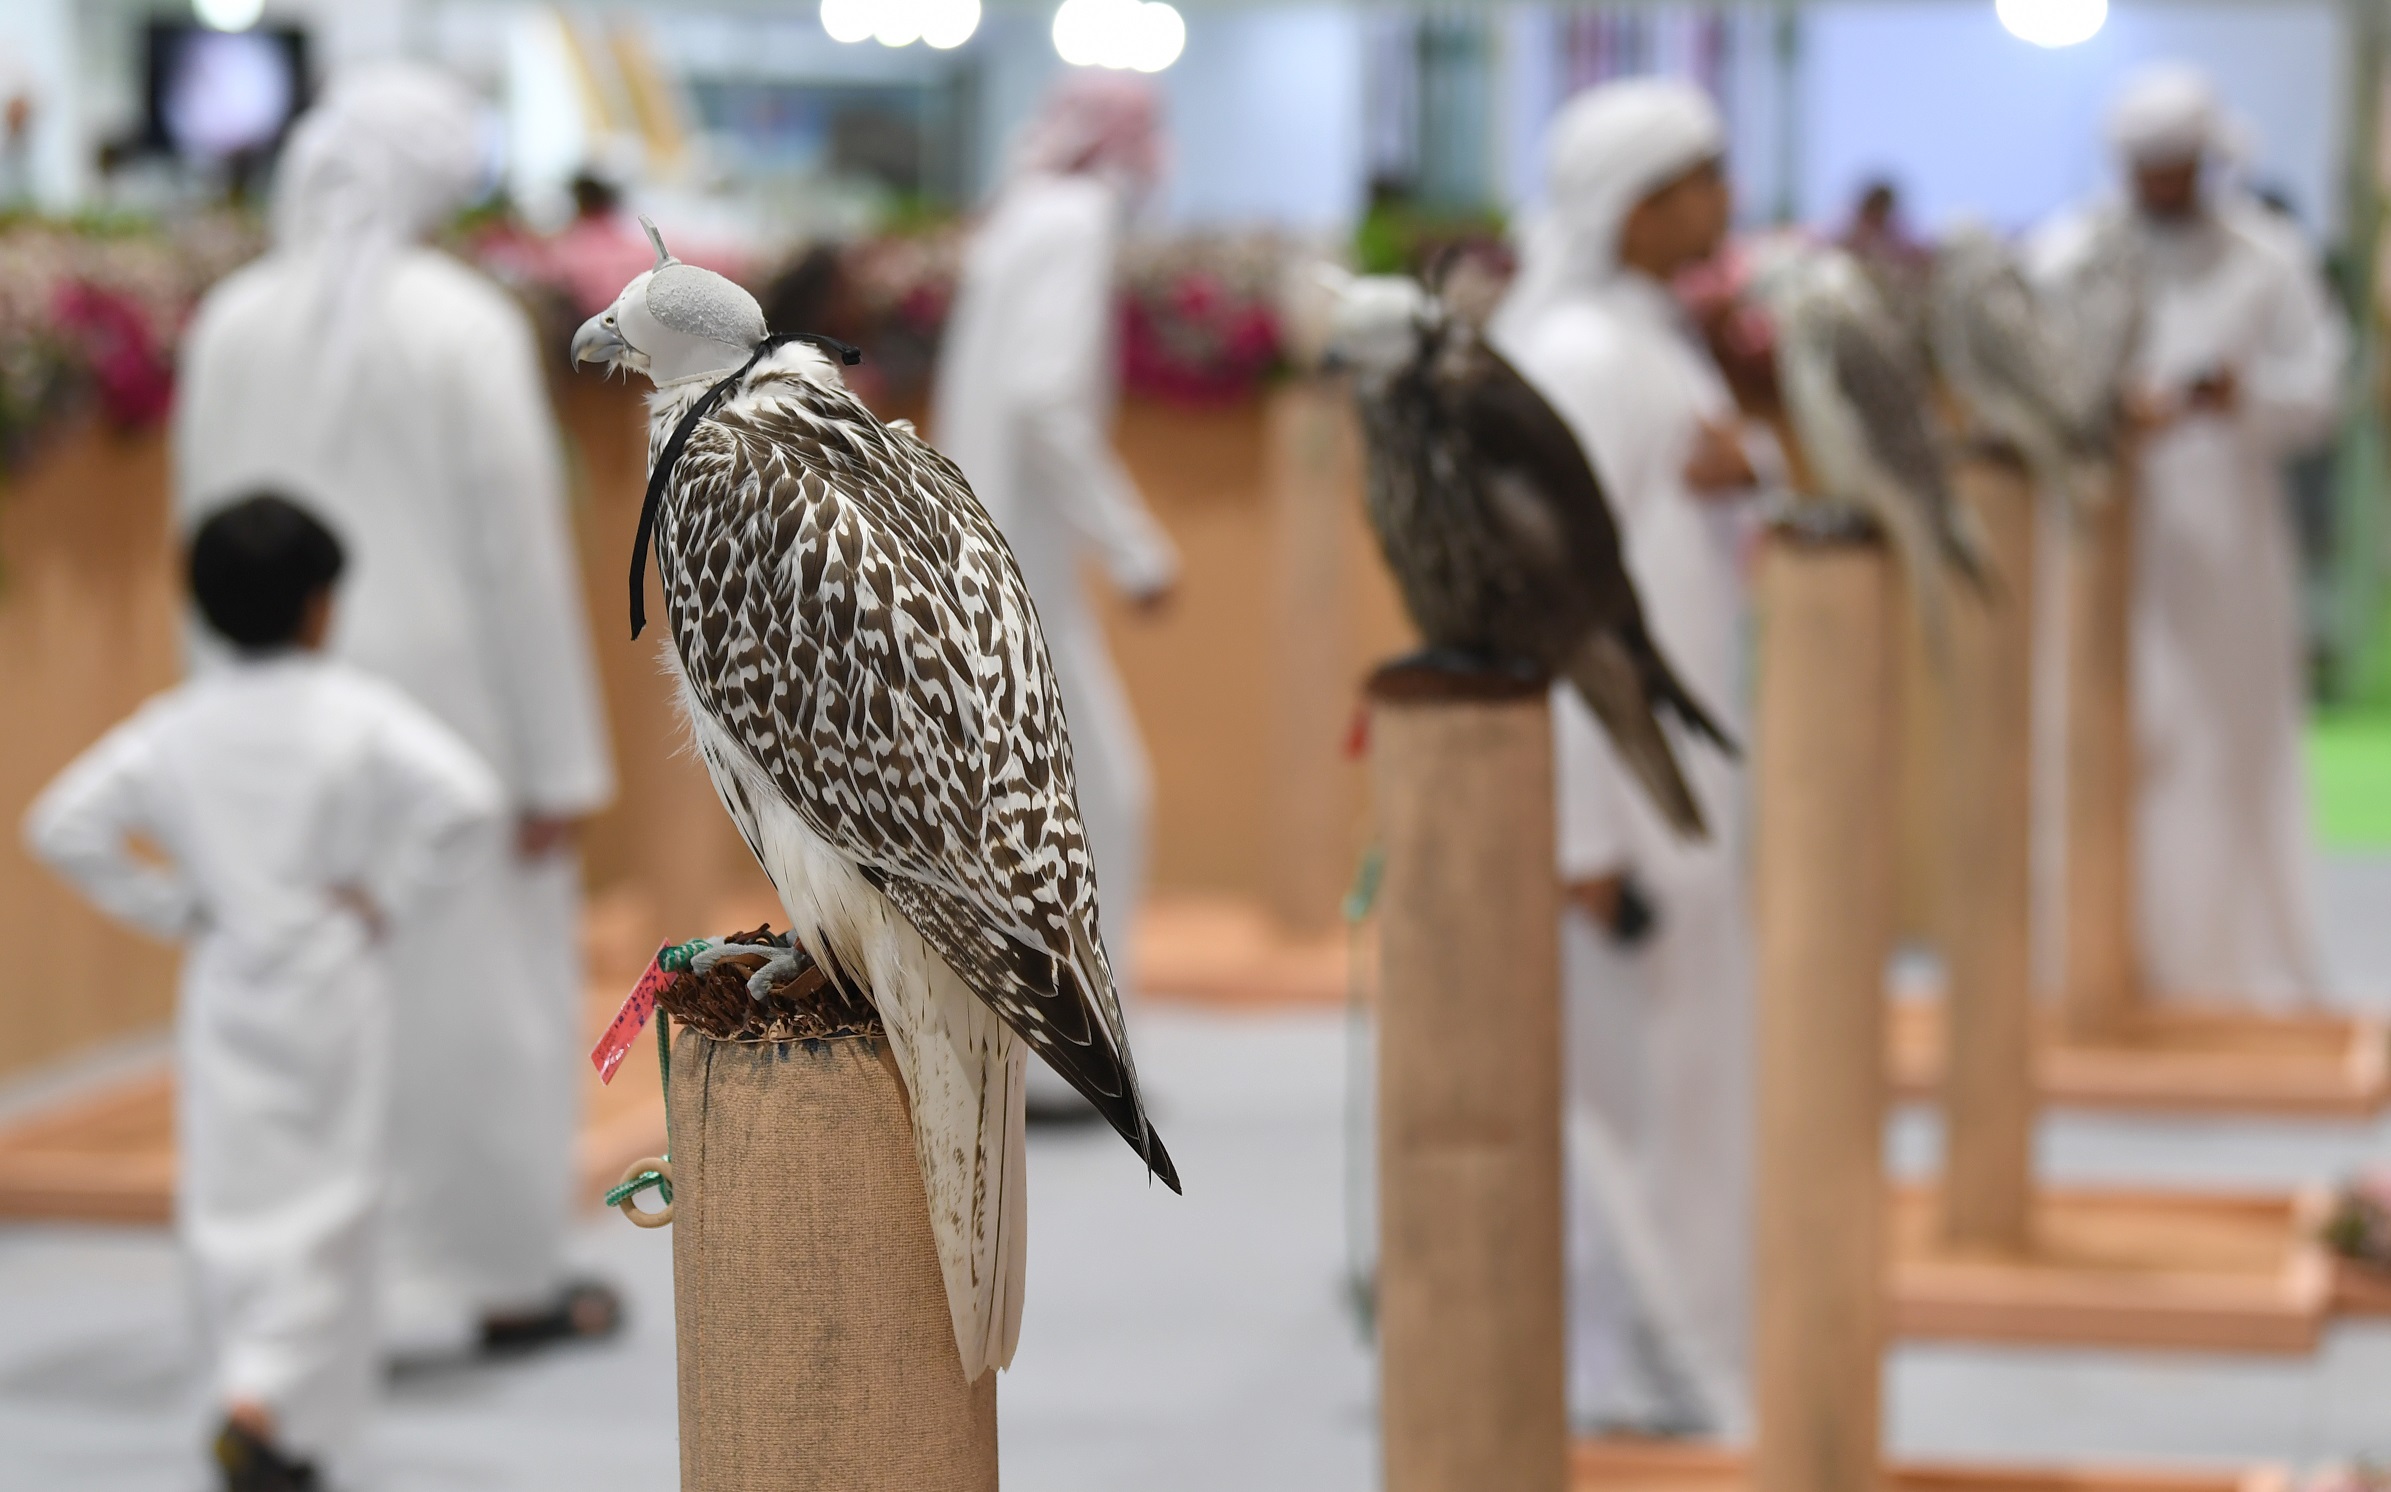  نادي صقاري الإمارات يحتفي بعامه العشرين في معرض أبوظبي الدولي للصيد